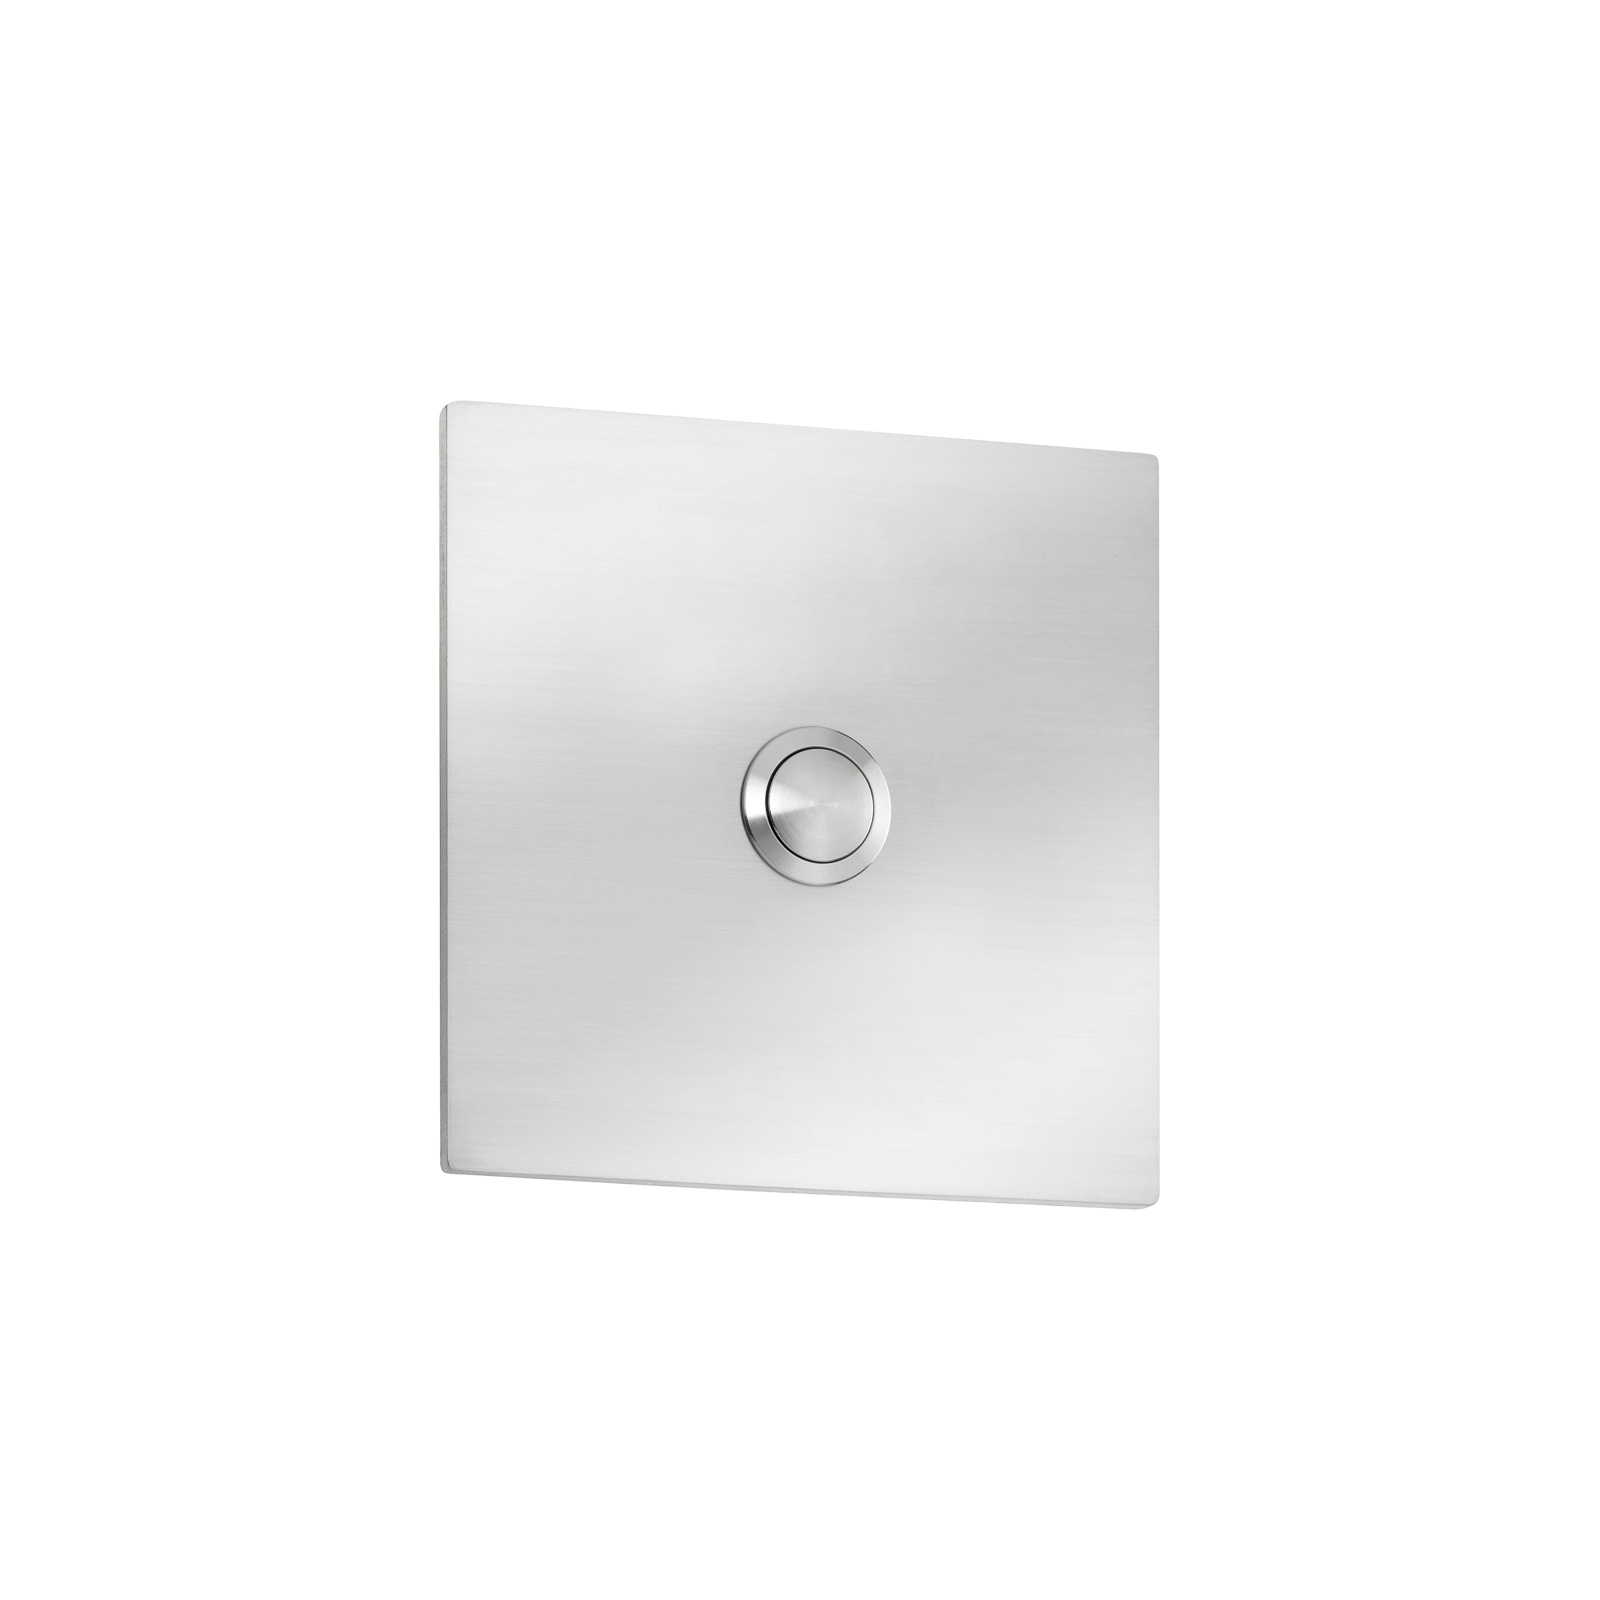 Grande doorbell plate made of stainless steel